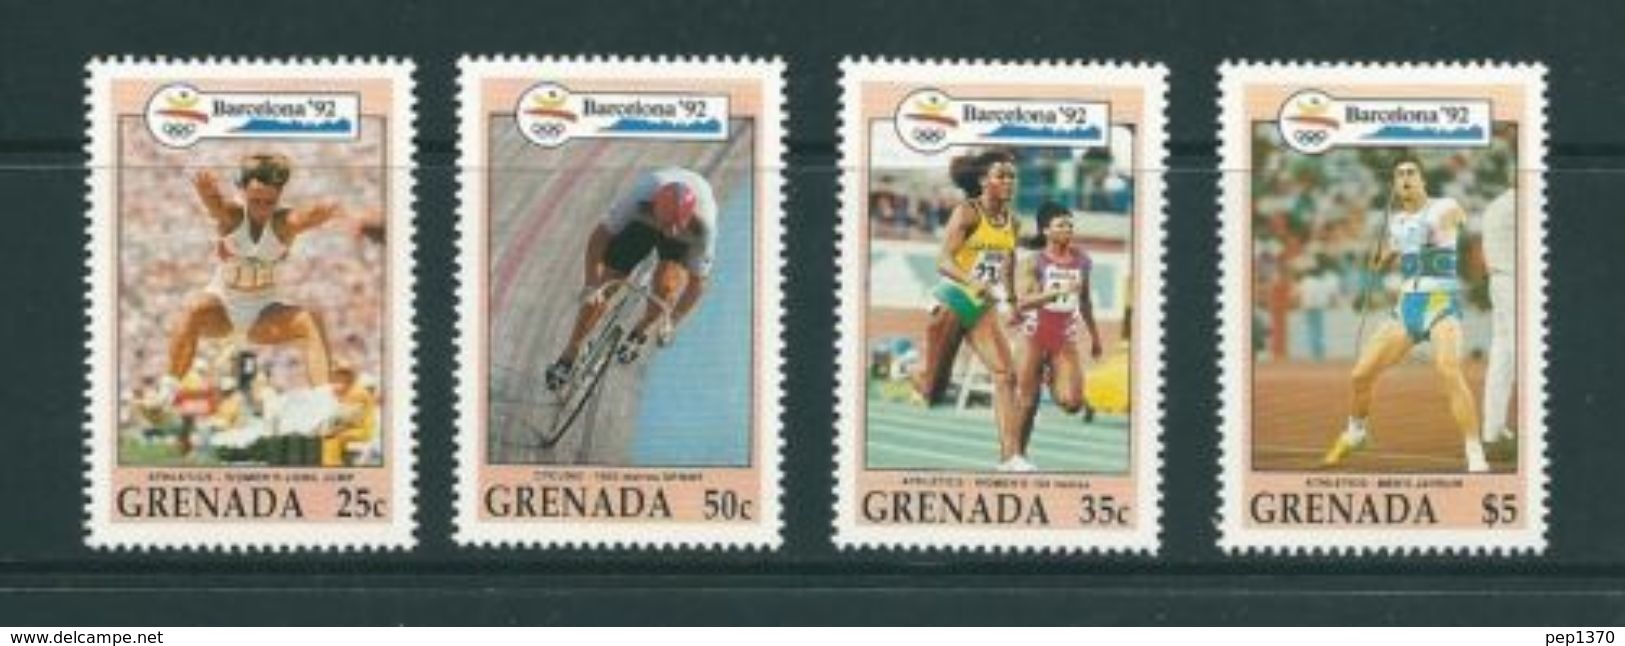 GRENADA 1992 - OLYMPICS BARCELONA 92 - YVERT Nº 2146-2149 - MICHEL ?? - SCOTT 2094-95-96-2100 - Springreiten